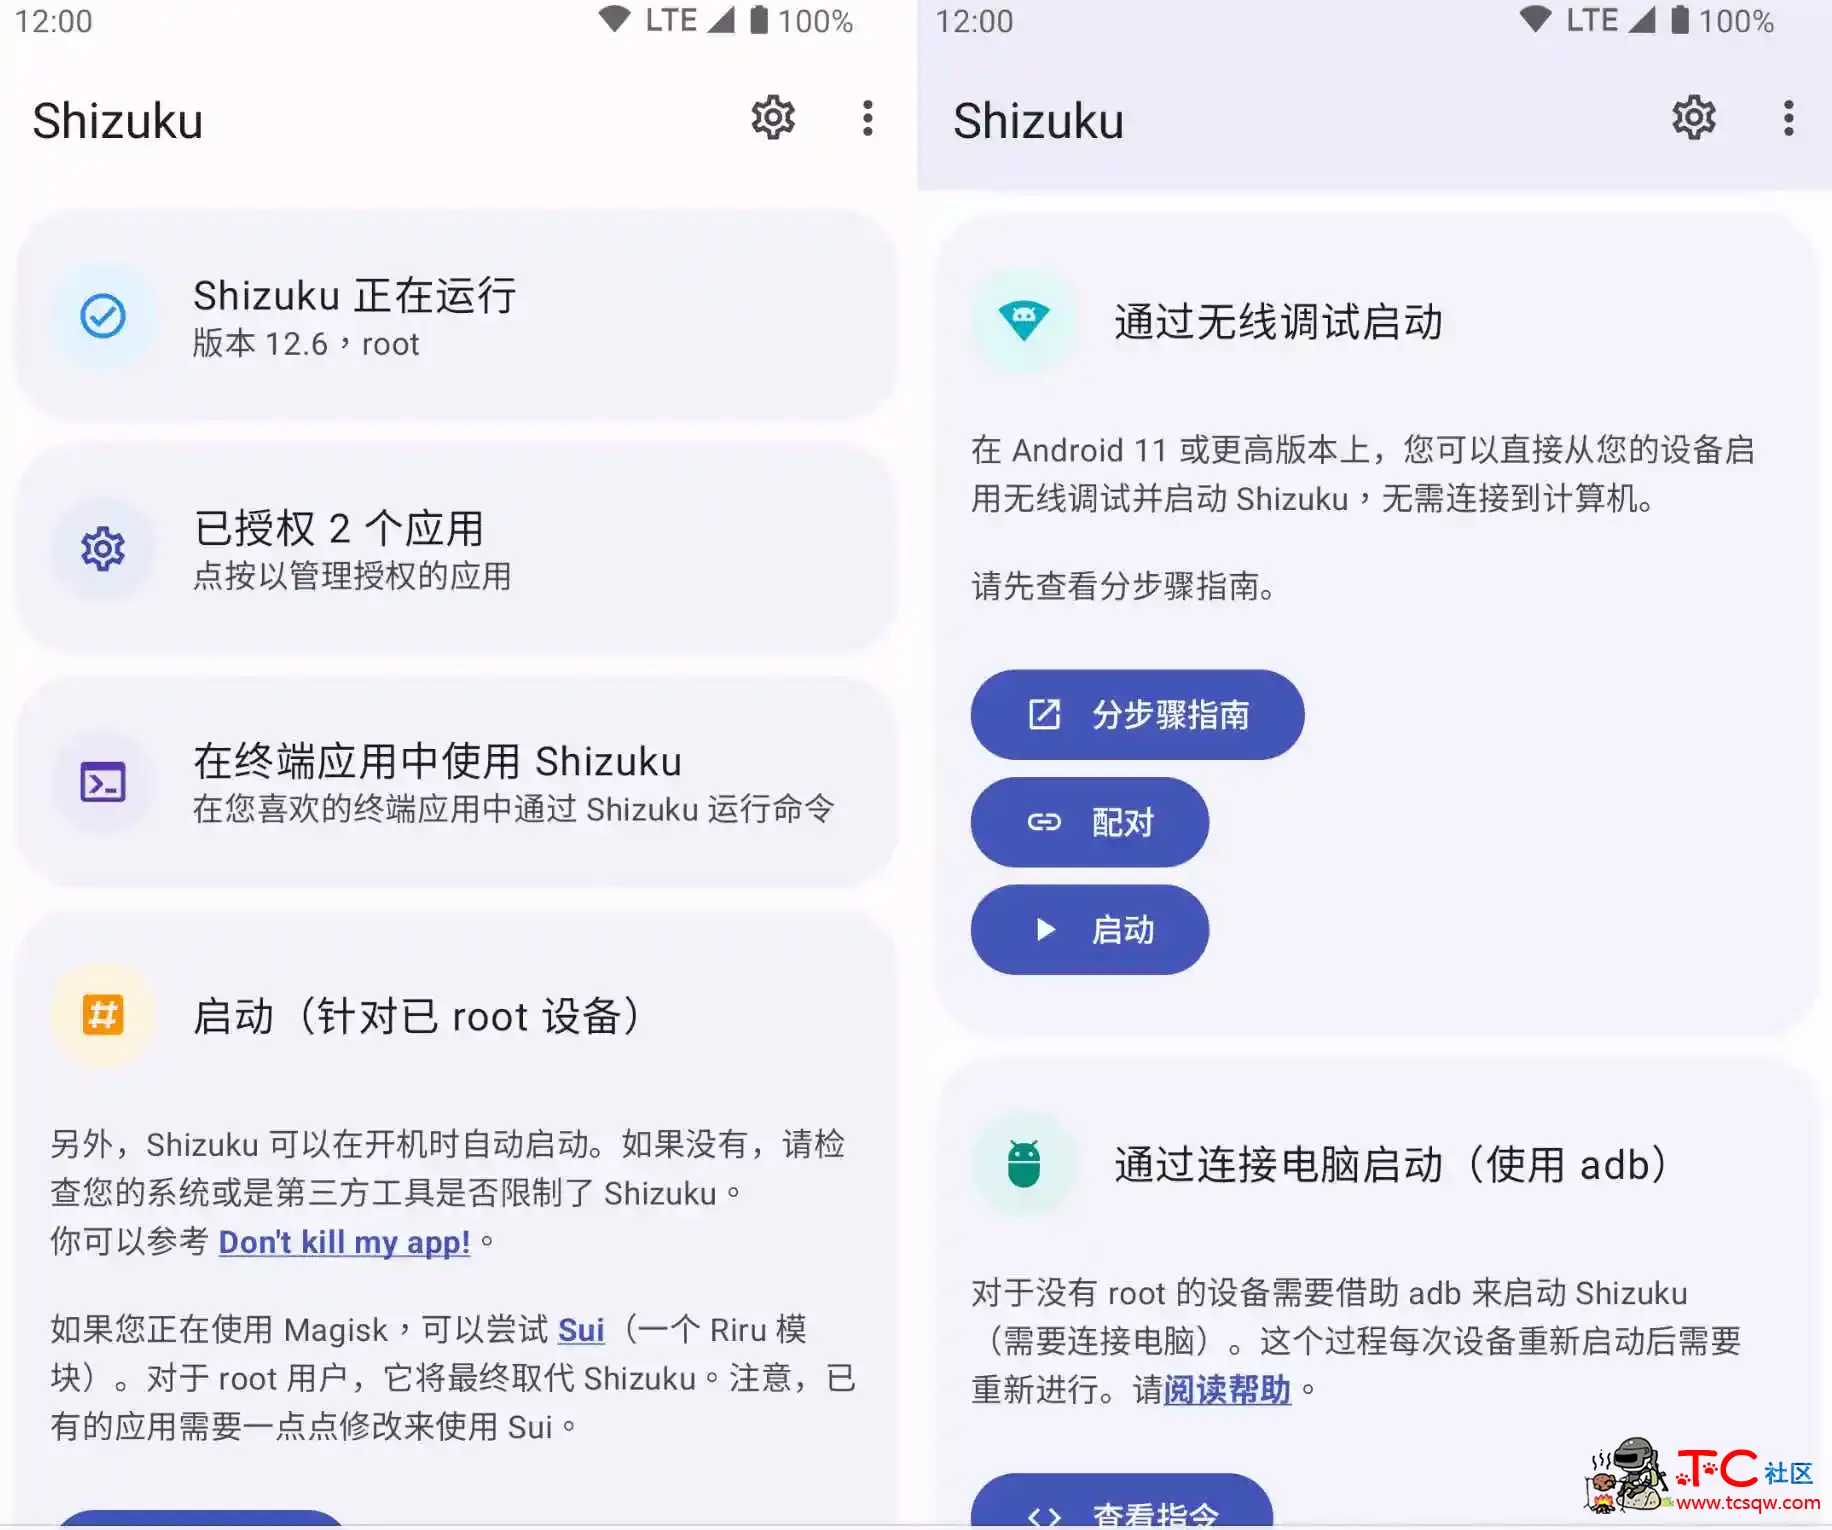 Shizuku_v13.3.0ADB批量快速激活 屠城辅助网www.tcfz1.com1860